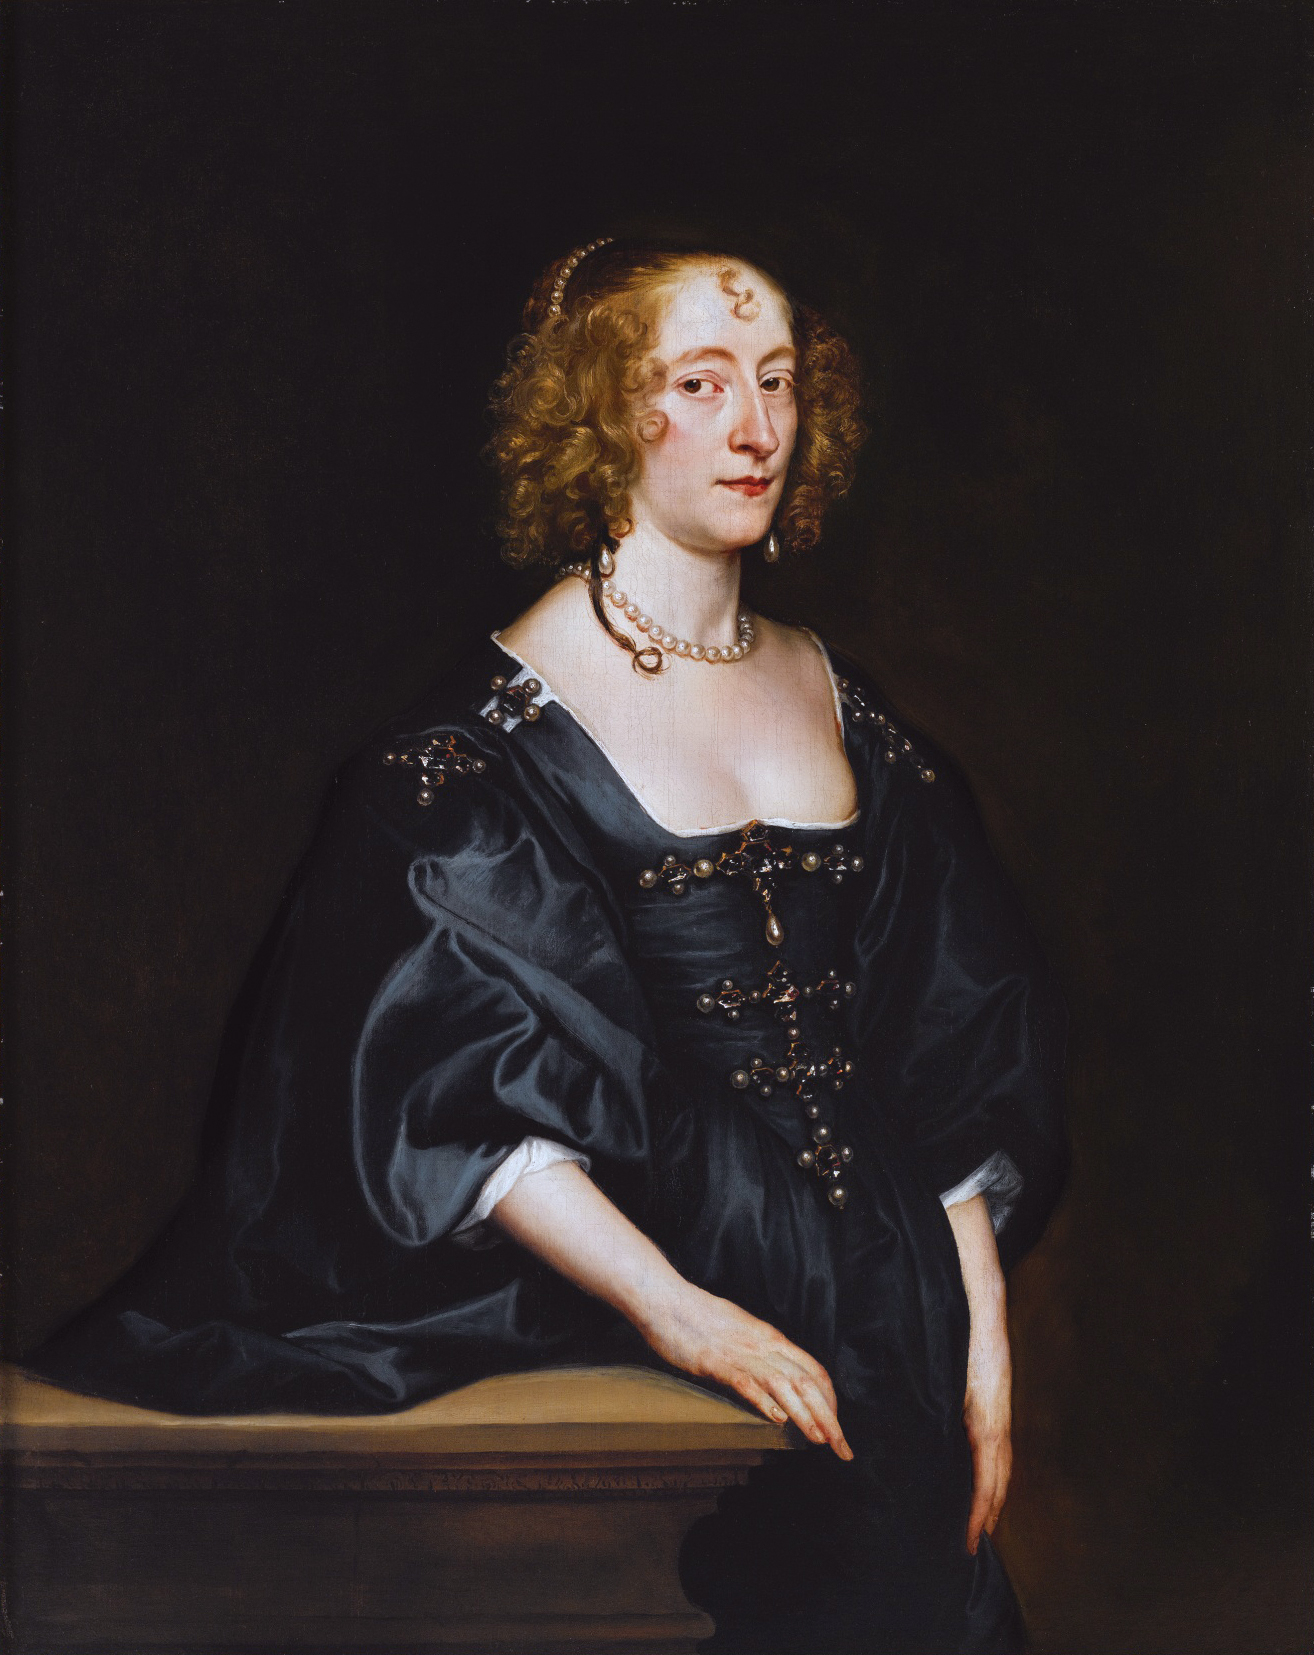 Anthony van Dyck [Public domain], via Wikimedia Commons